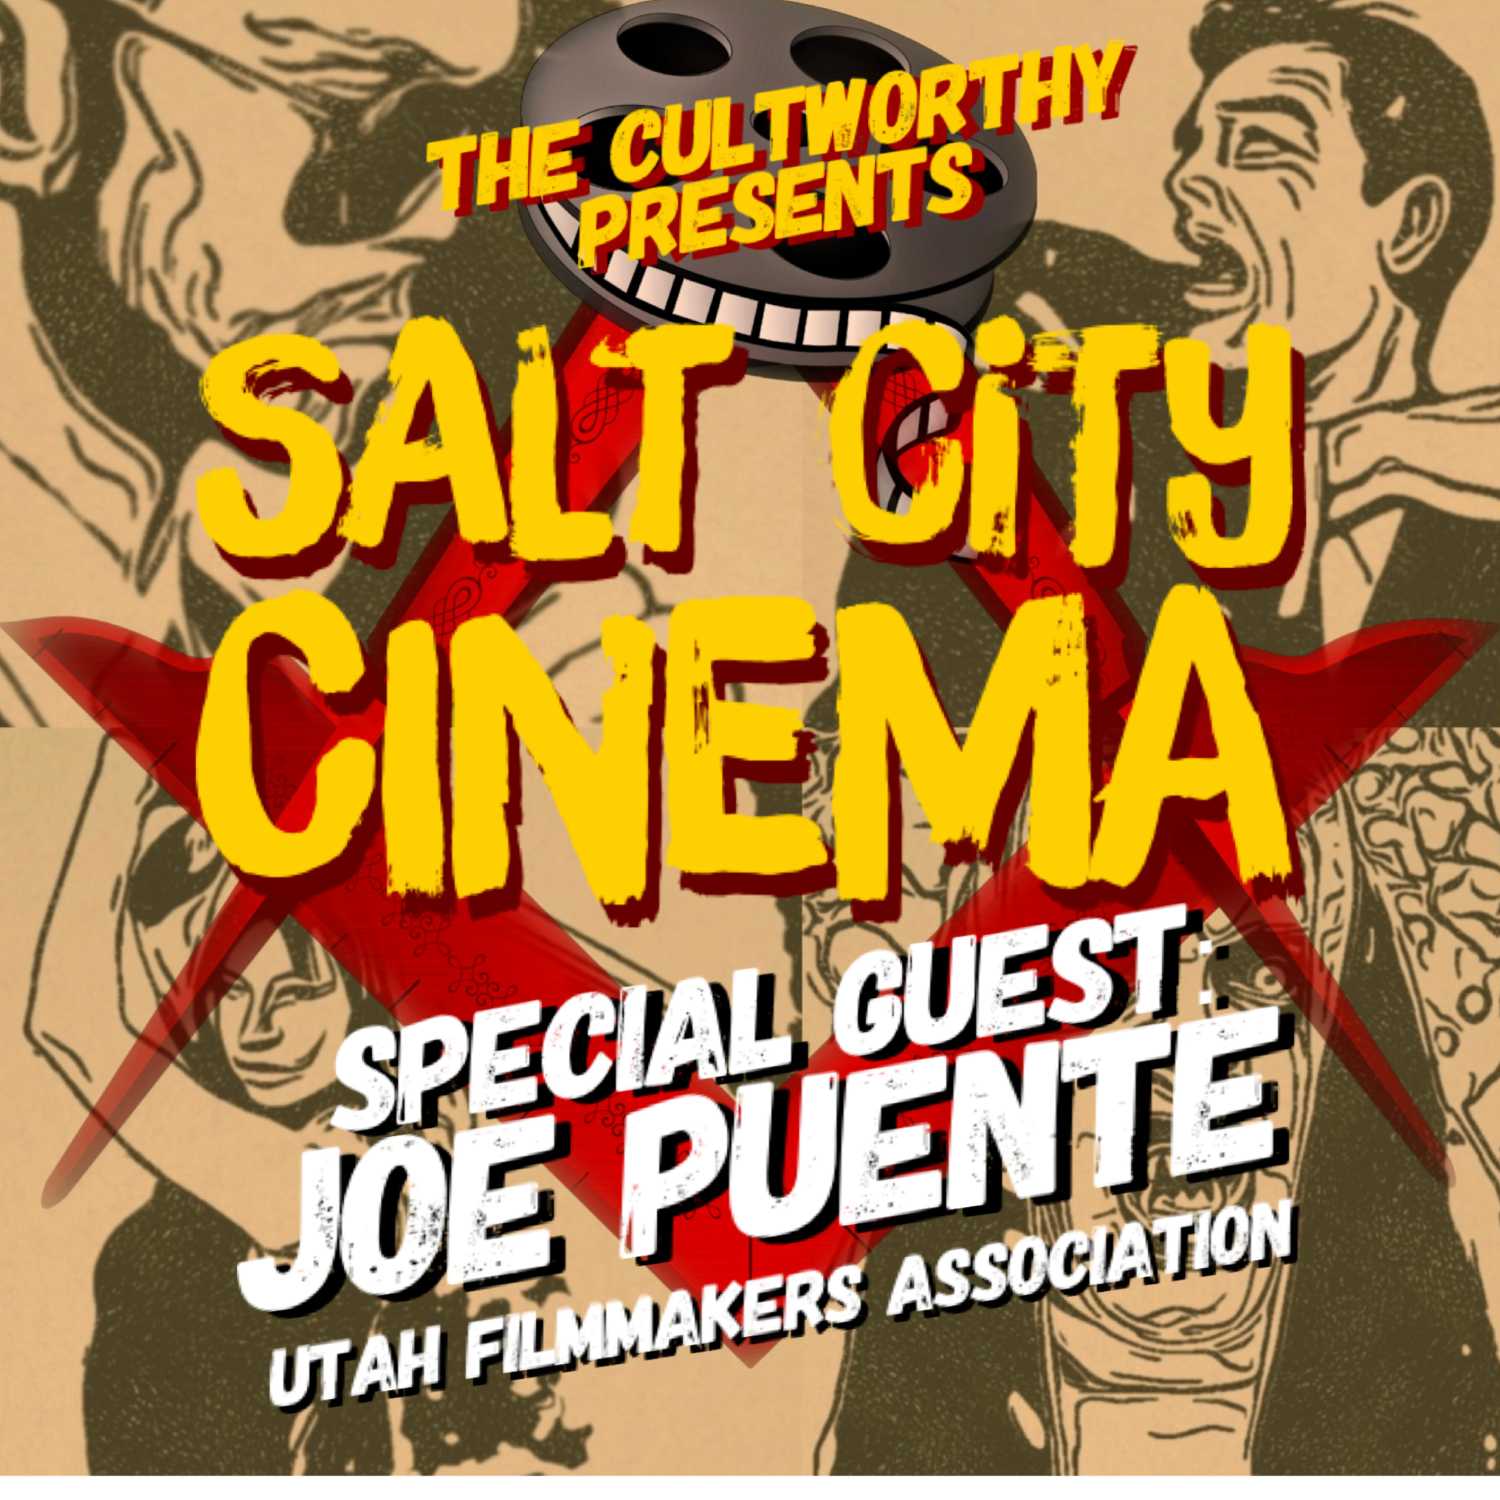 *SPECIAL EDITION* - SALT CITY CINEMA PRESENTS: JOE PUENTE